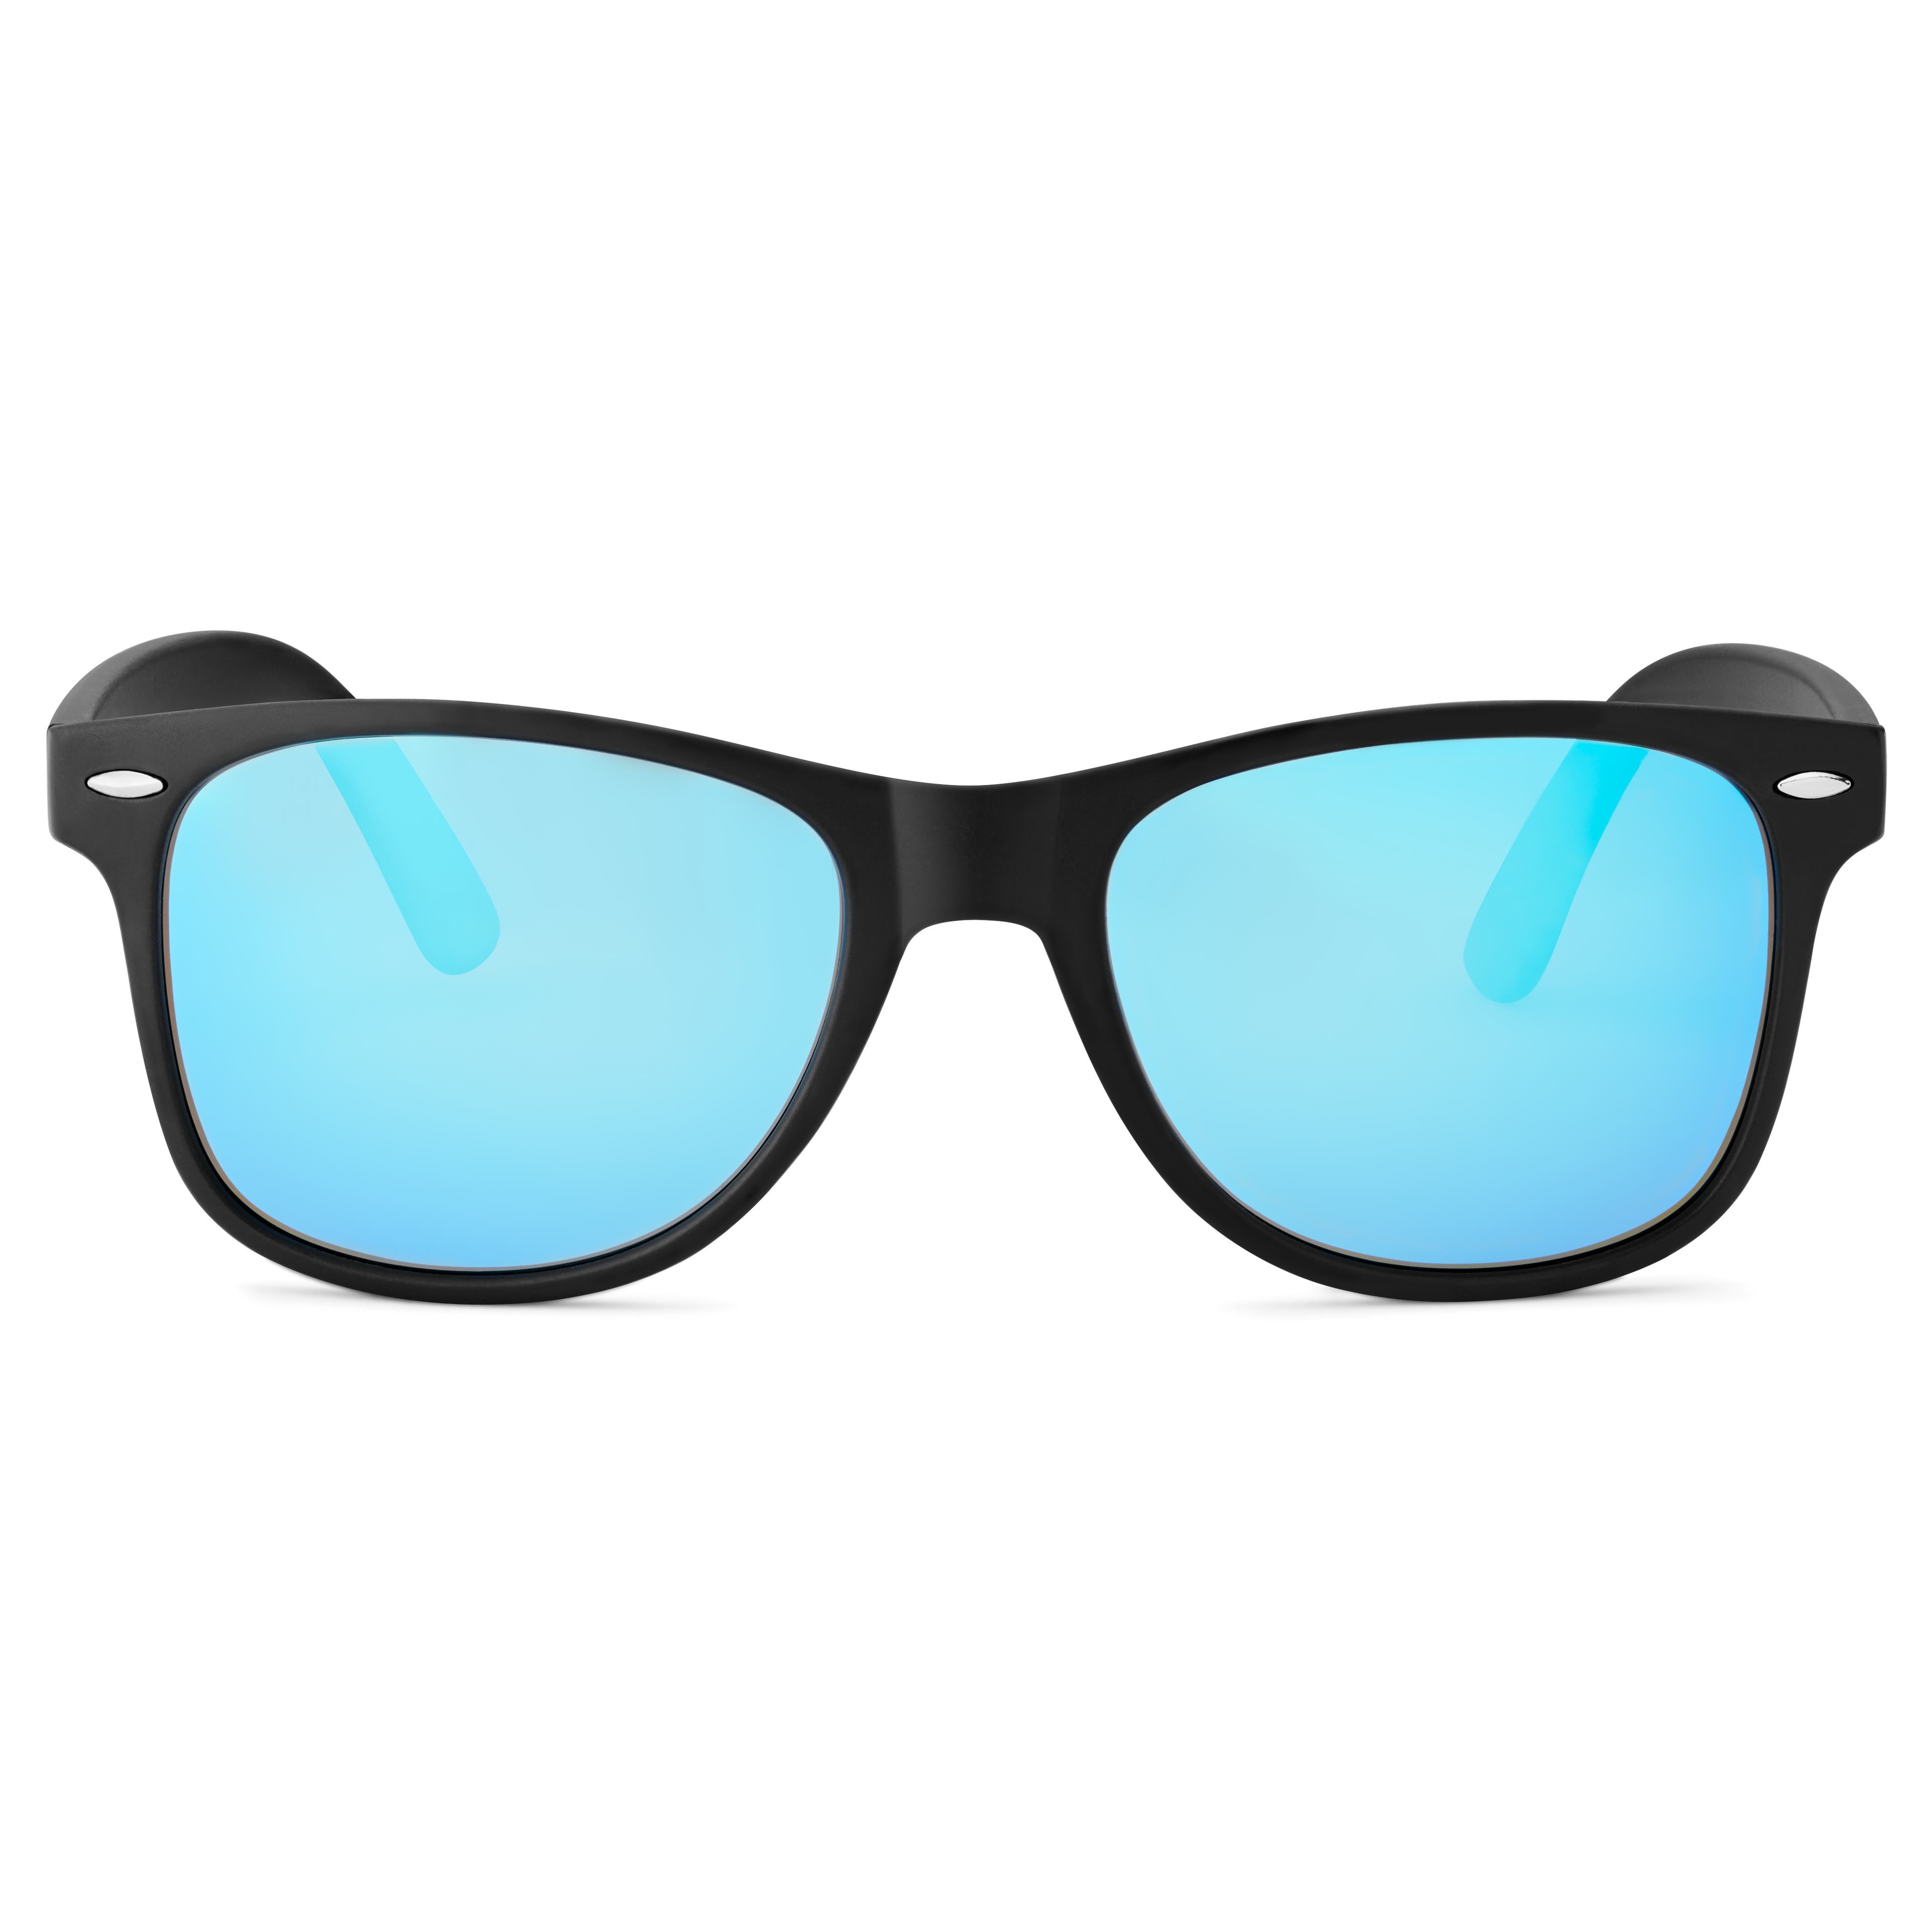 Sort & Blå Polariserede Retro Solbriller | På lager! |